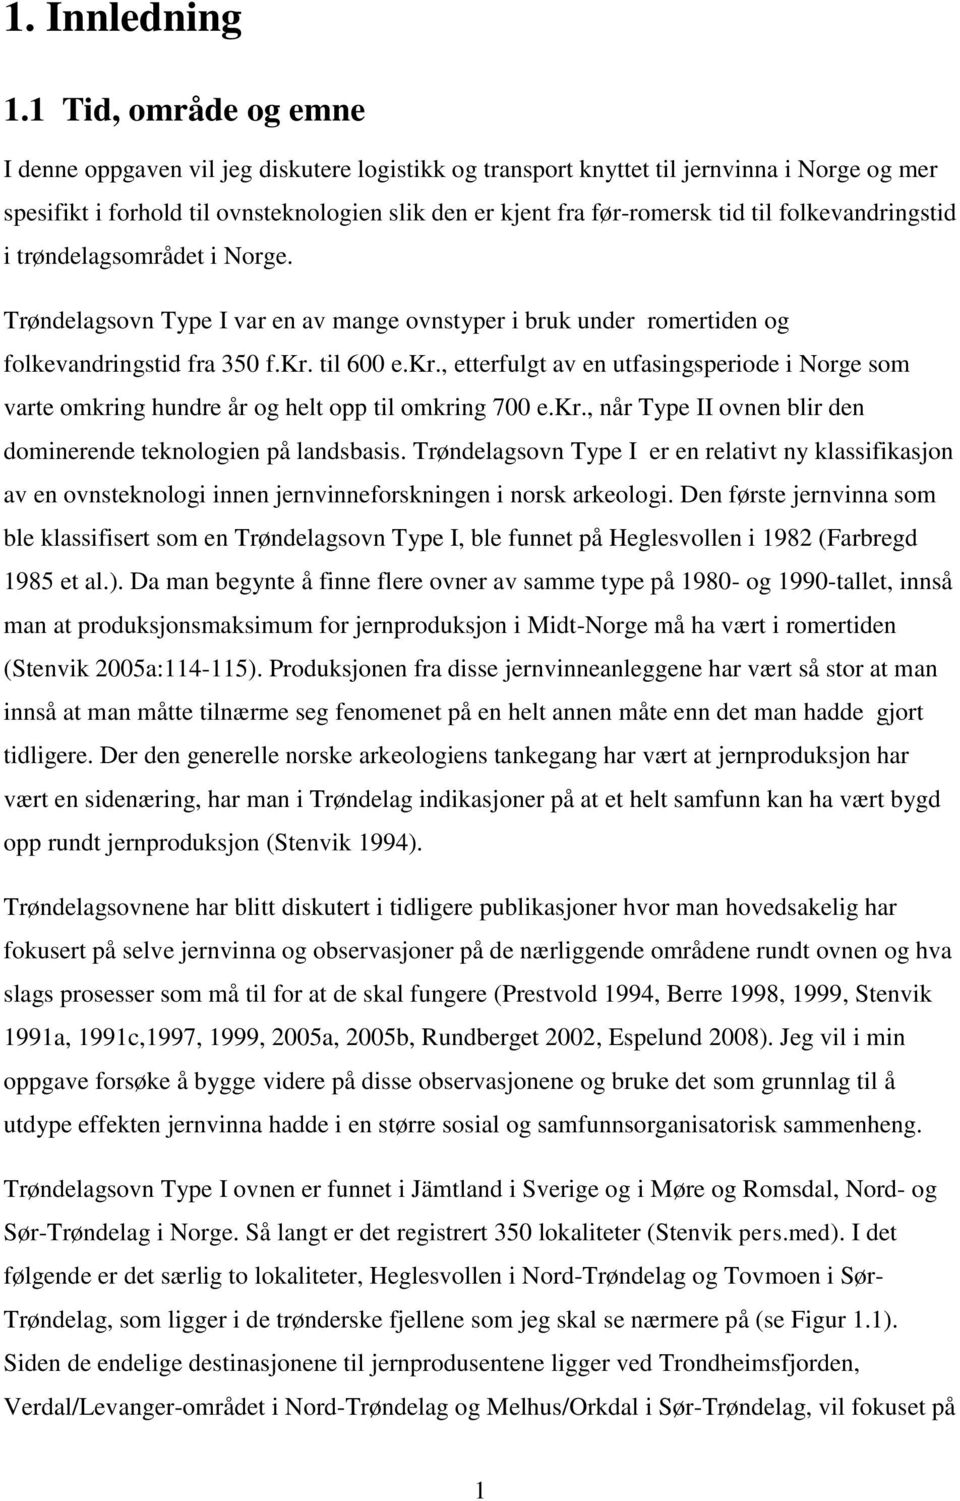 folkevandringstid i trøndelagsområdet i Norge. Trøndelagsovn Type I var en av mange ovnstyper i bruk under romertiden og folkevandringstid fra 350 f.kr.